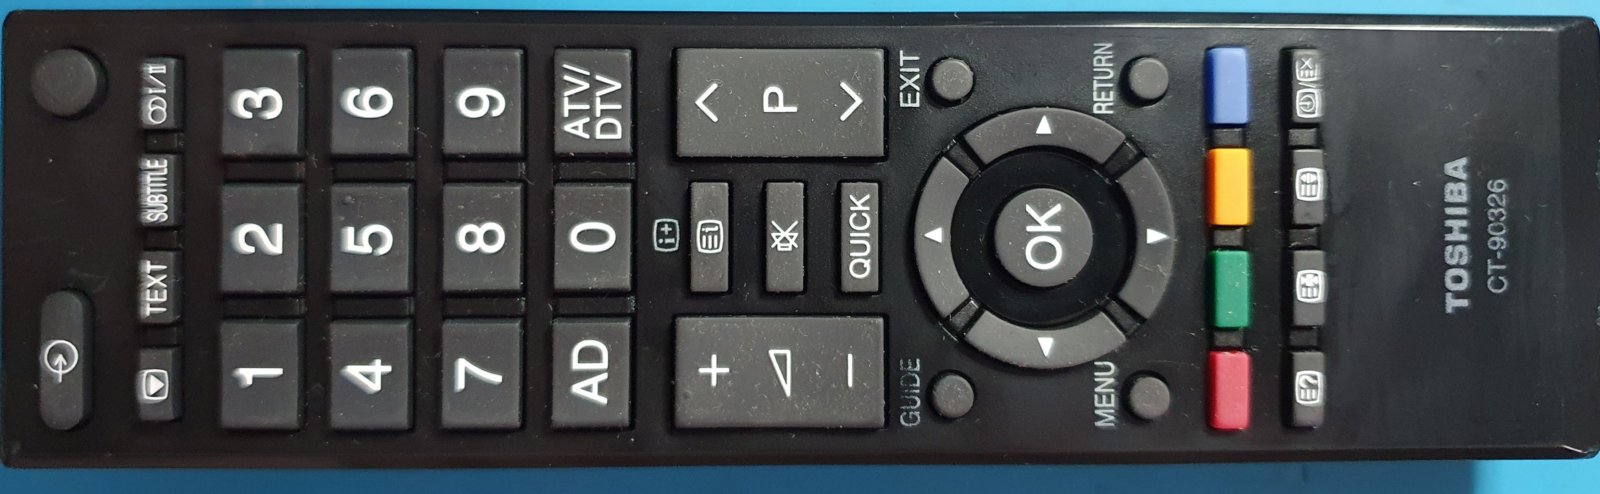 toshiba remote control